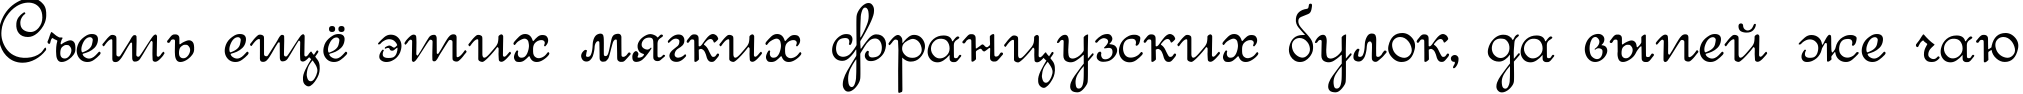 Пример написания шрифтом Round Script Italic текста на русском